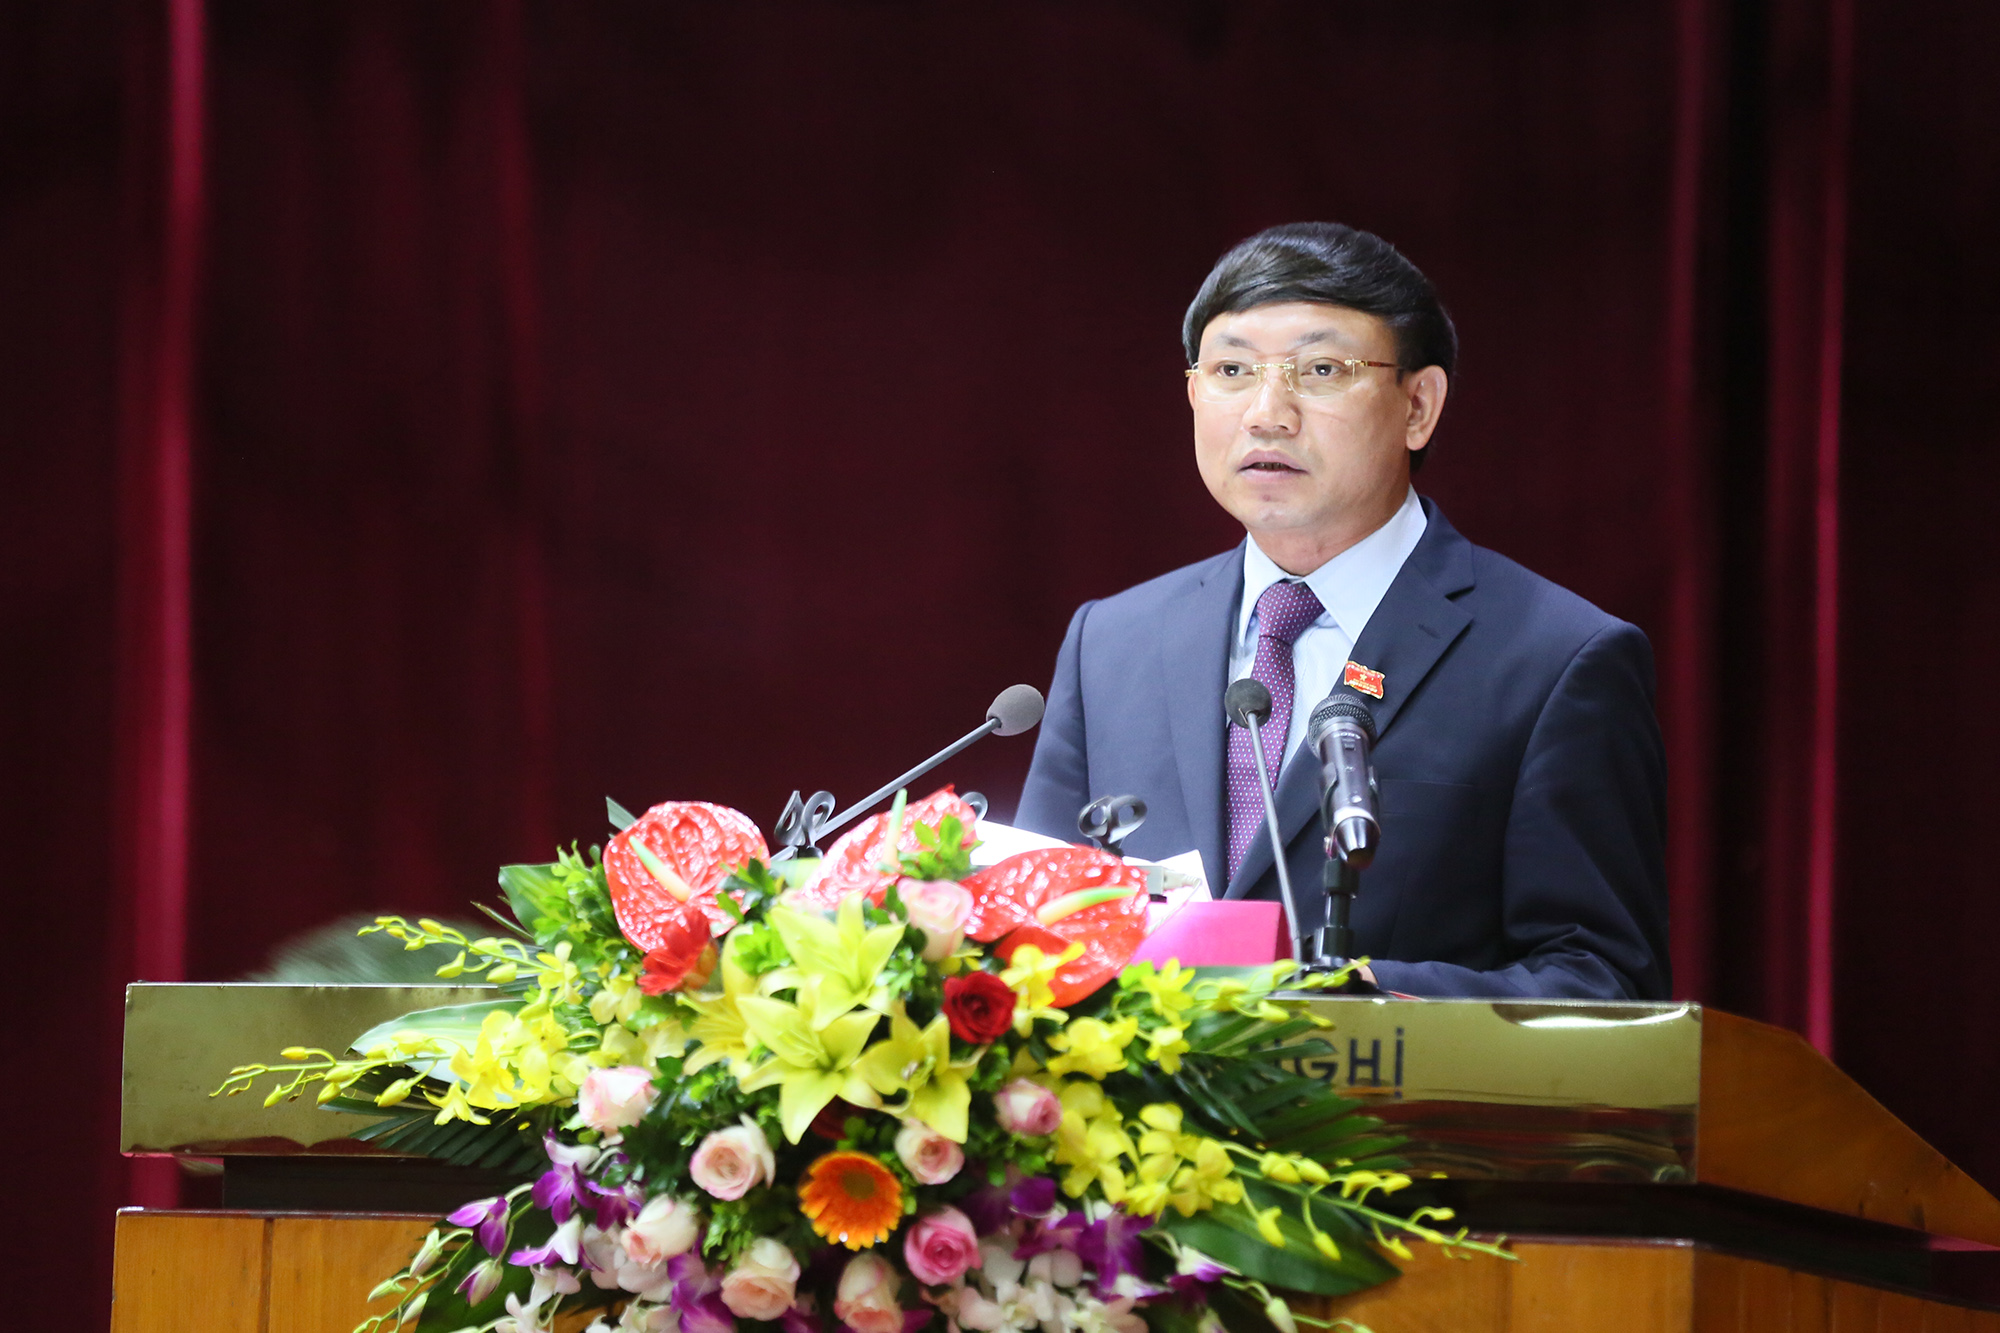  Ông Nguyễn Xuân Ký- Bí thư Tỉnh ủy, Chủ tịch HĐND tỉnh Quảng Ninh